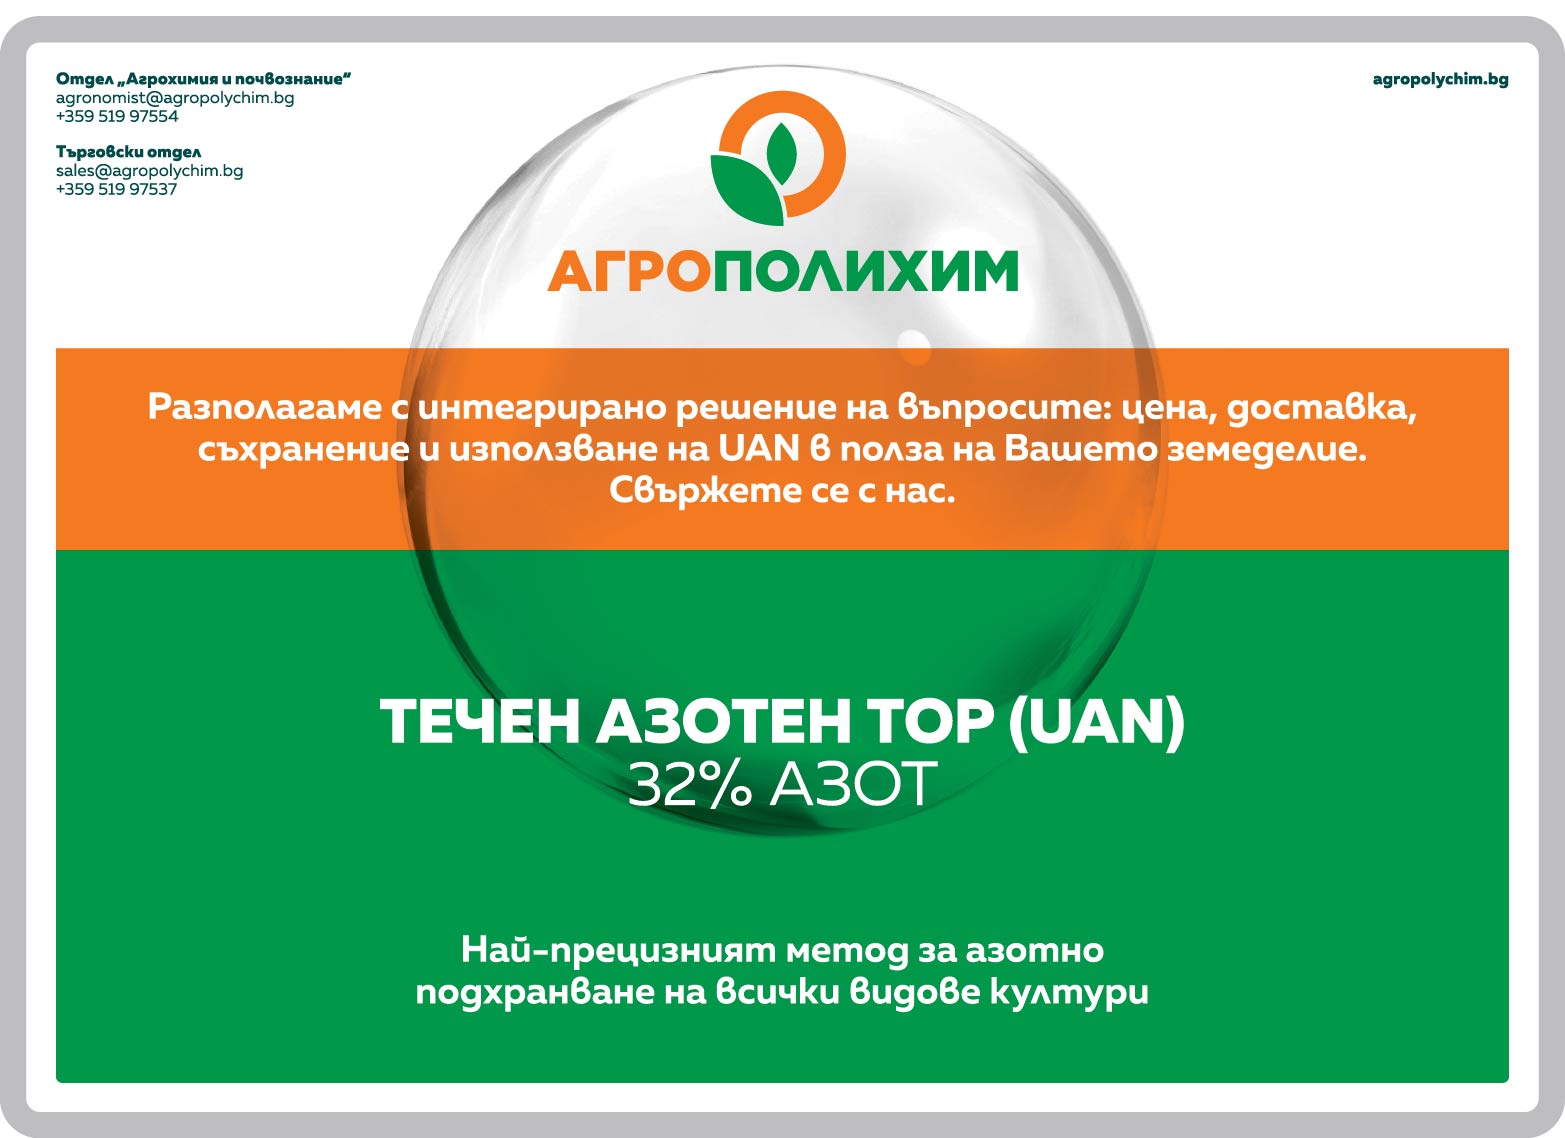 Press ad - UAN - Agrovestnik (265x190mm)